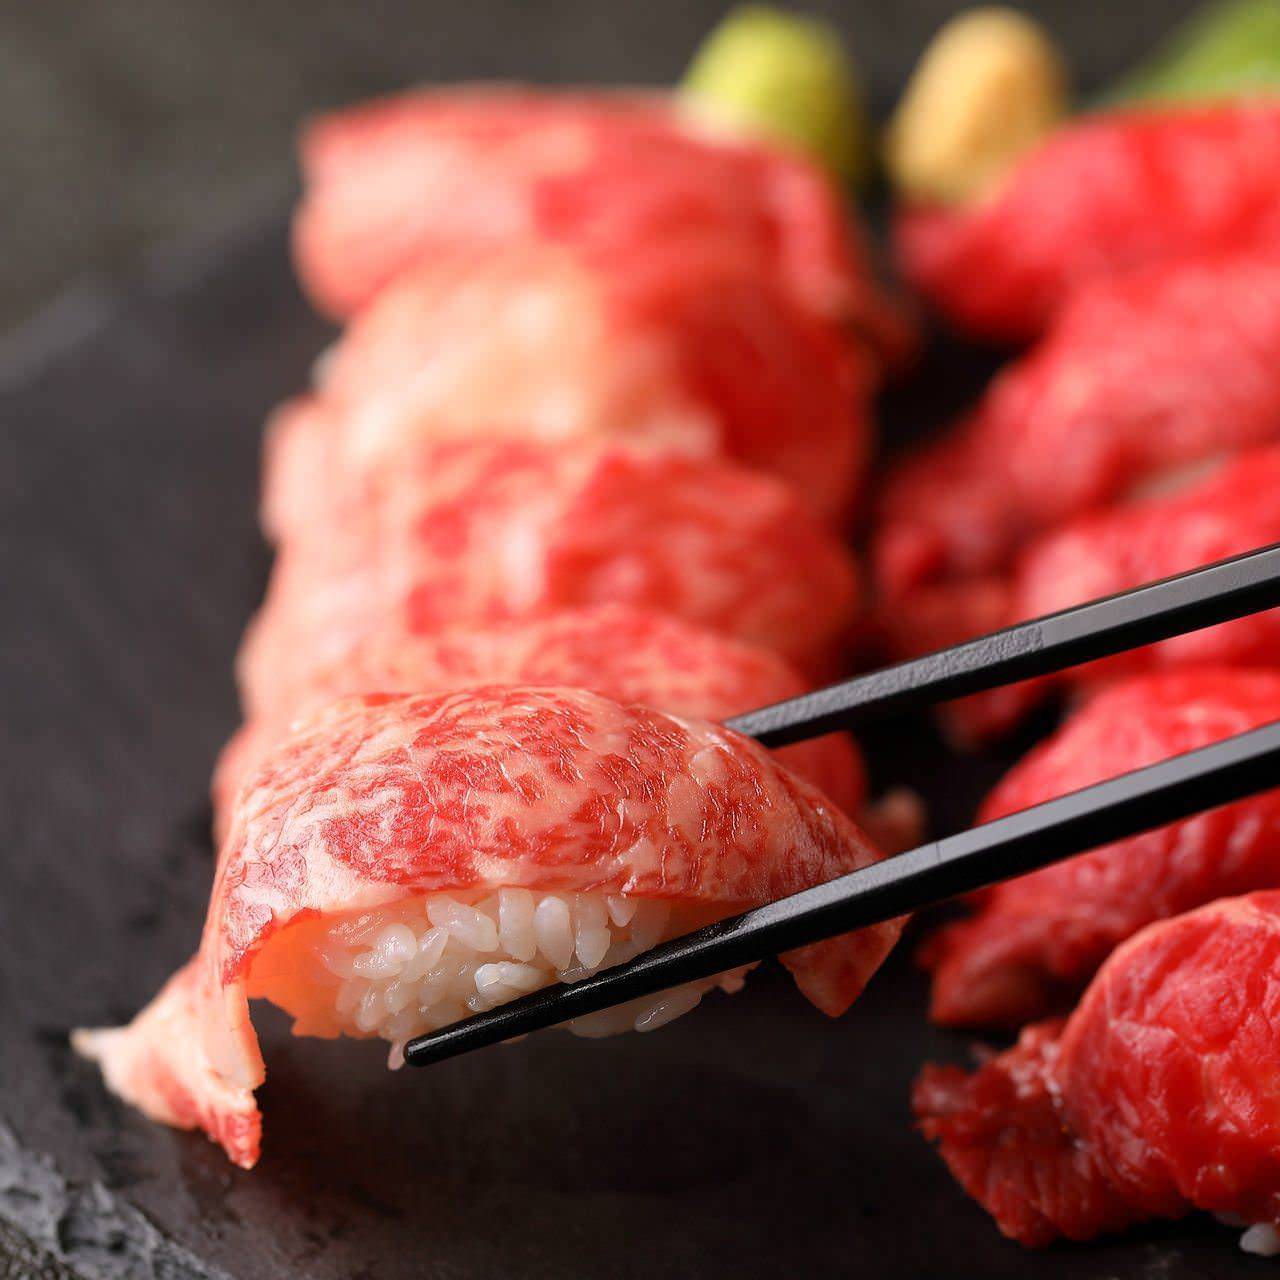 シュラスコ&肉寿司 食べ放題 個室肉バル DOMO DOMO 錦糸町店